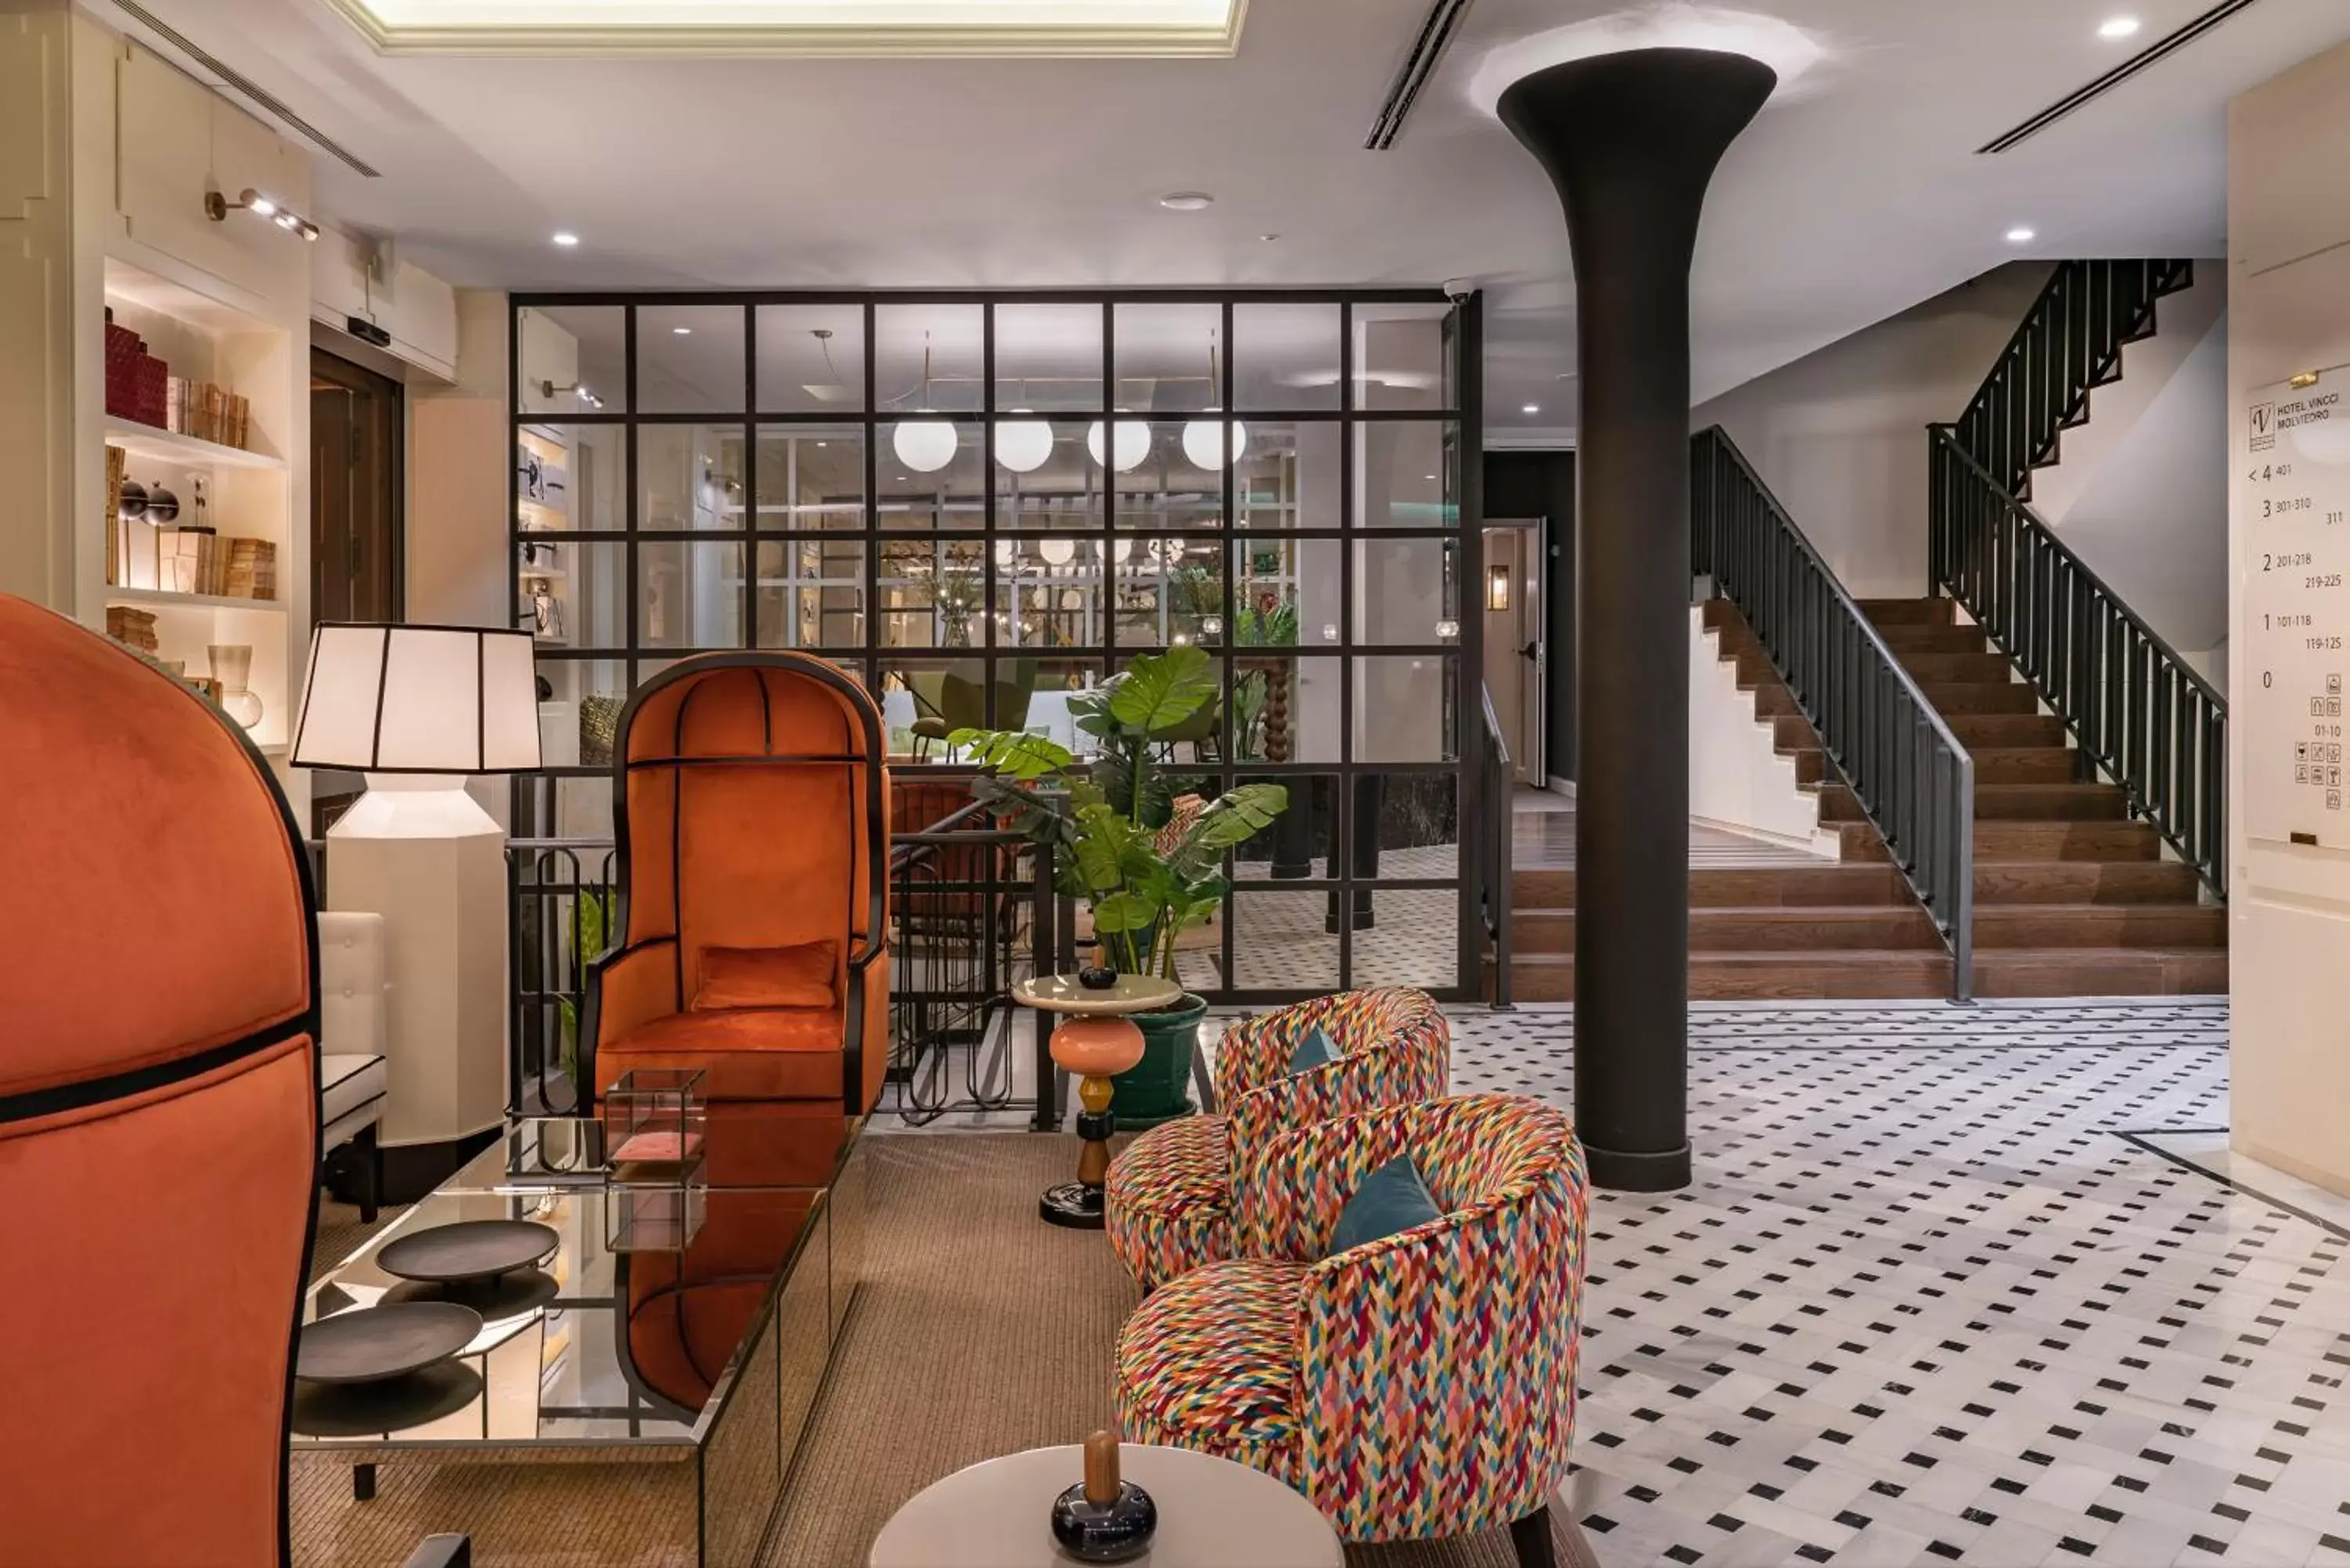 Lobby or reception in Vincci Molviedro Suites Apartments